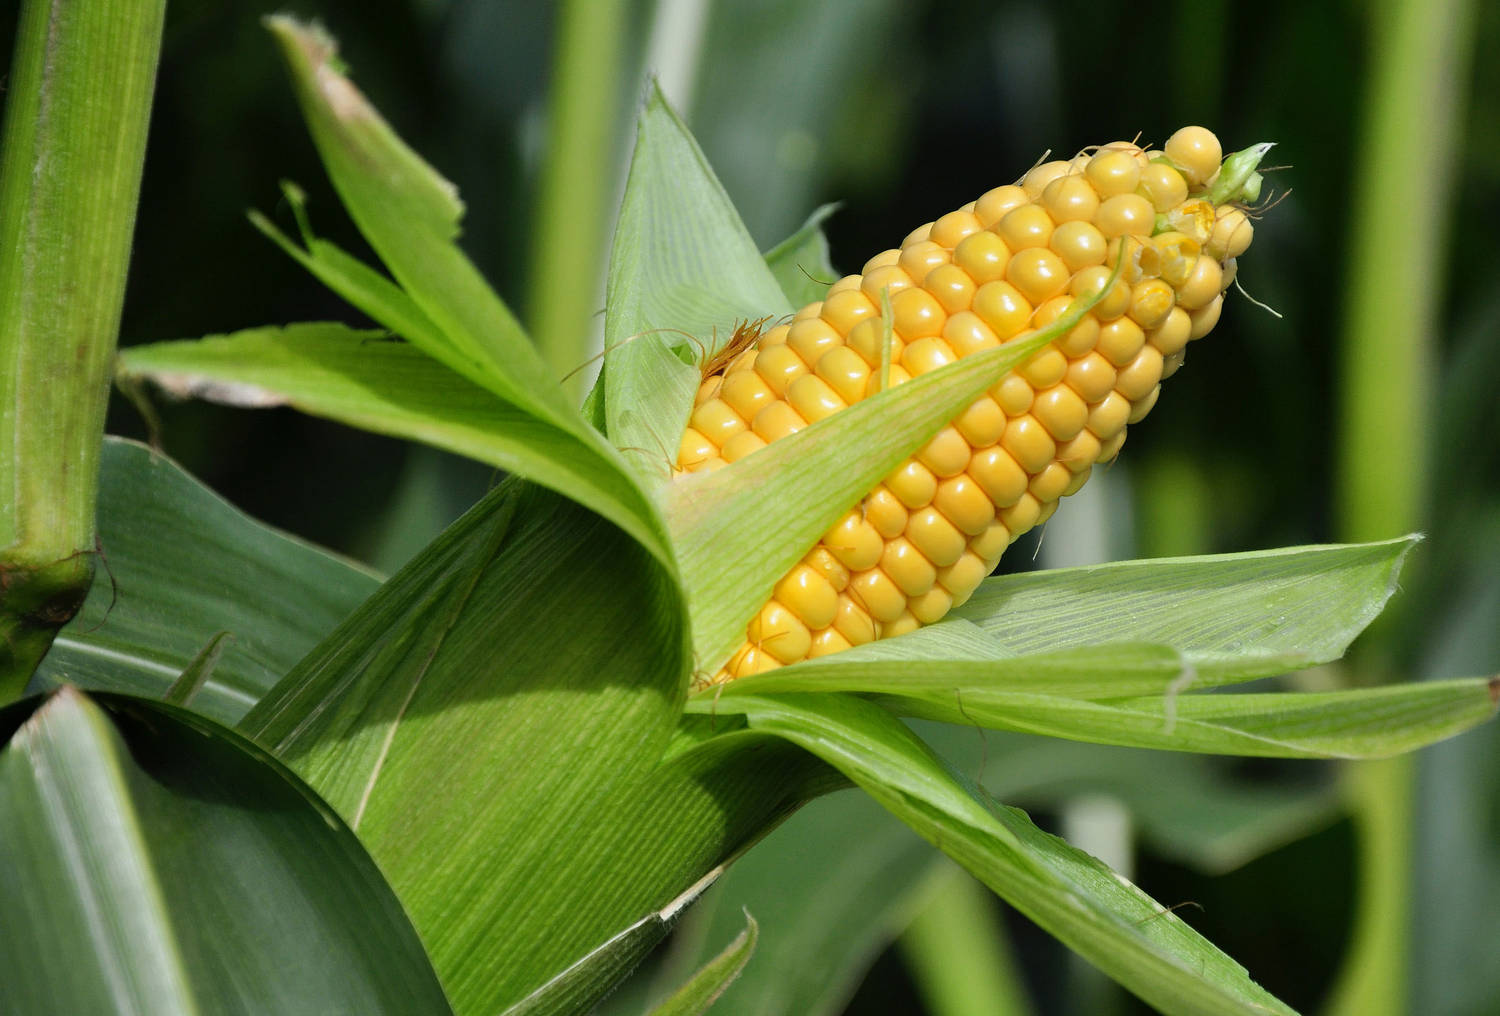 Болезни початка кукурузы: как спасти урожай от вредителей и сорняков?